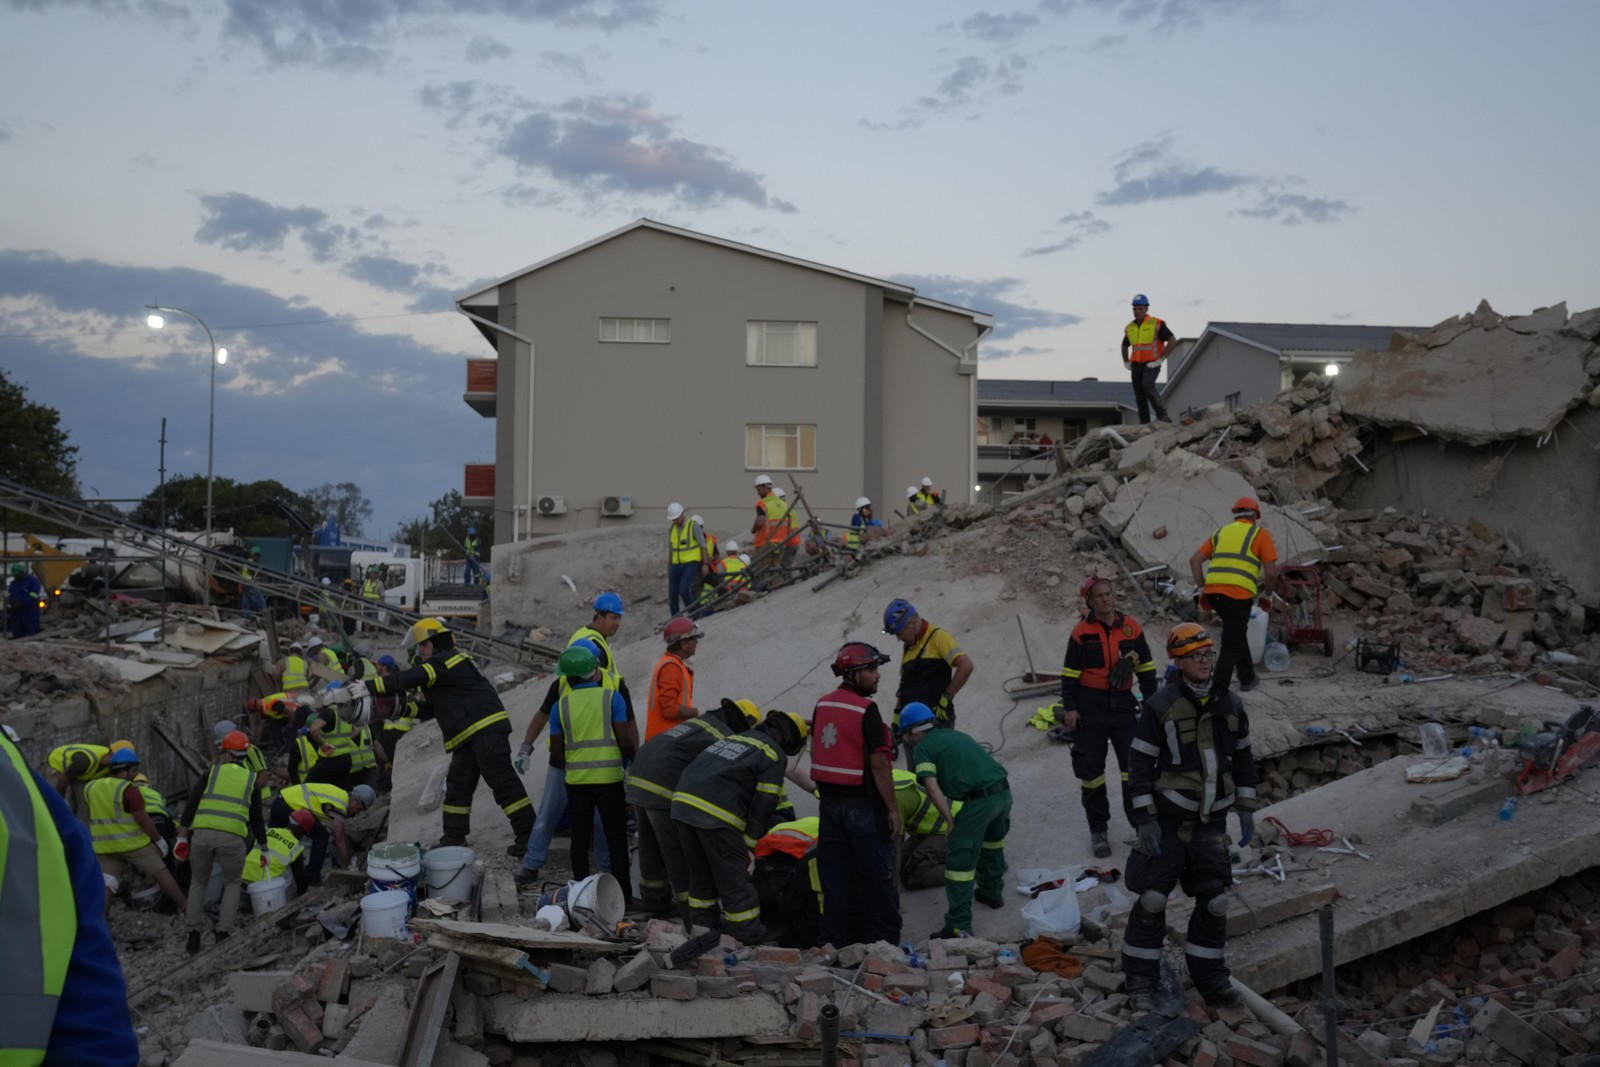 κατάρρευση κτιρίου στη νότια αφρική: αναζητούνται άλλοι 42 εργάτες - επτά νεκροί